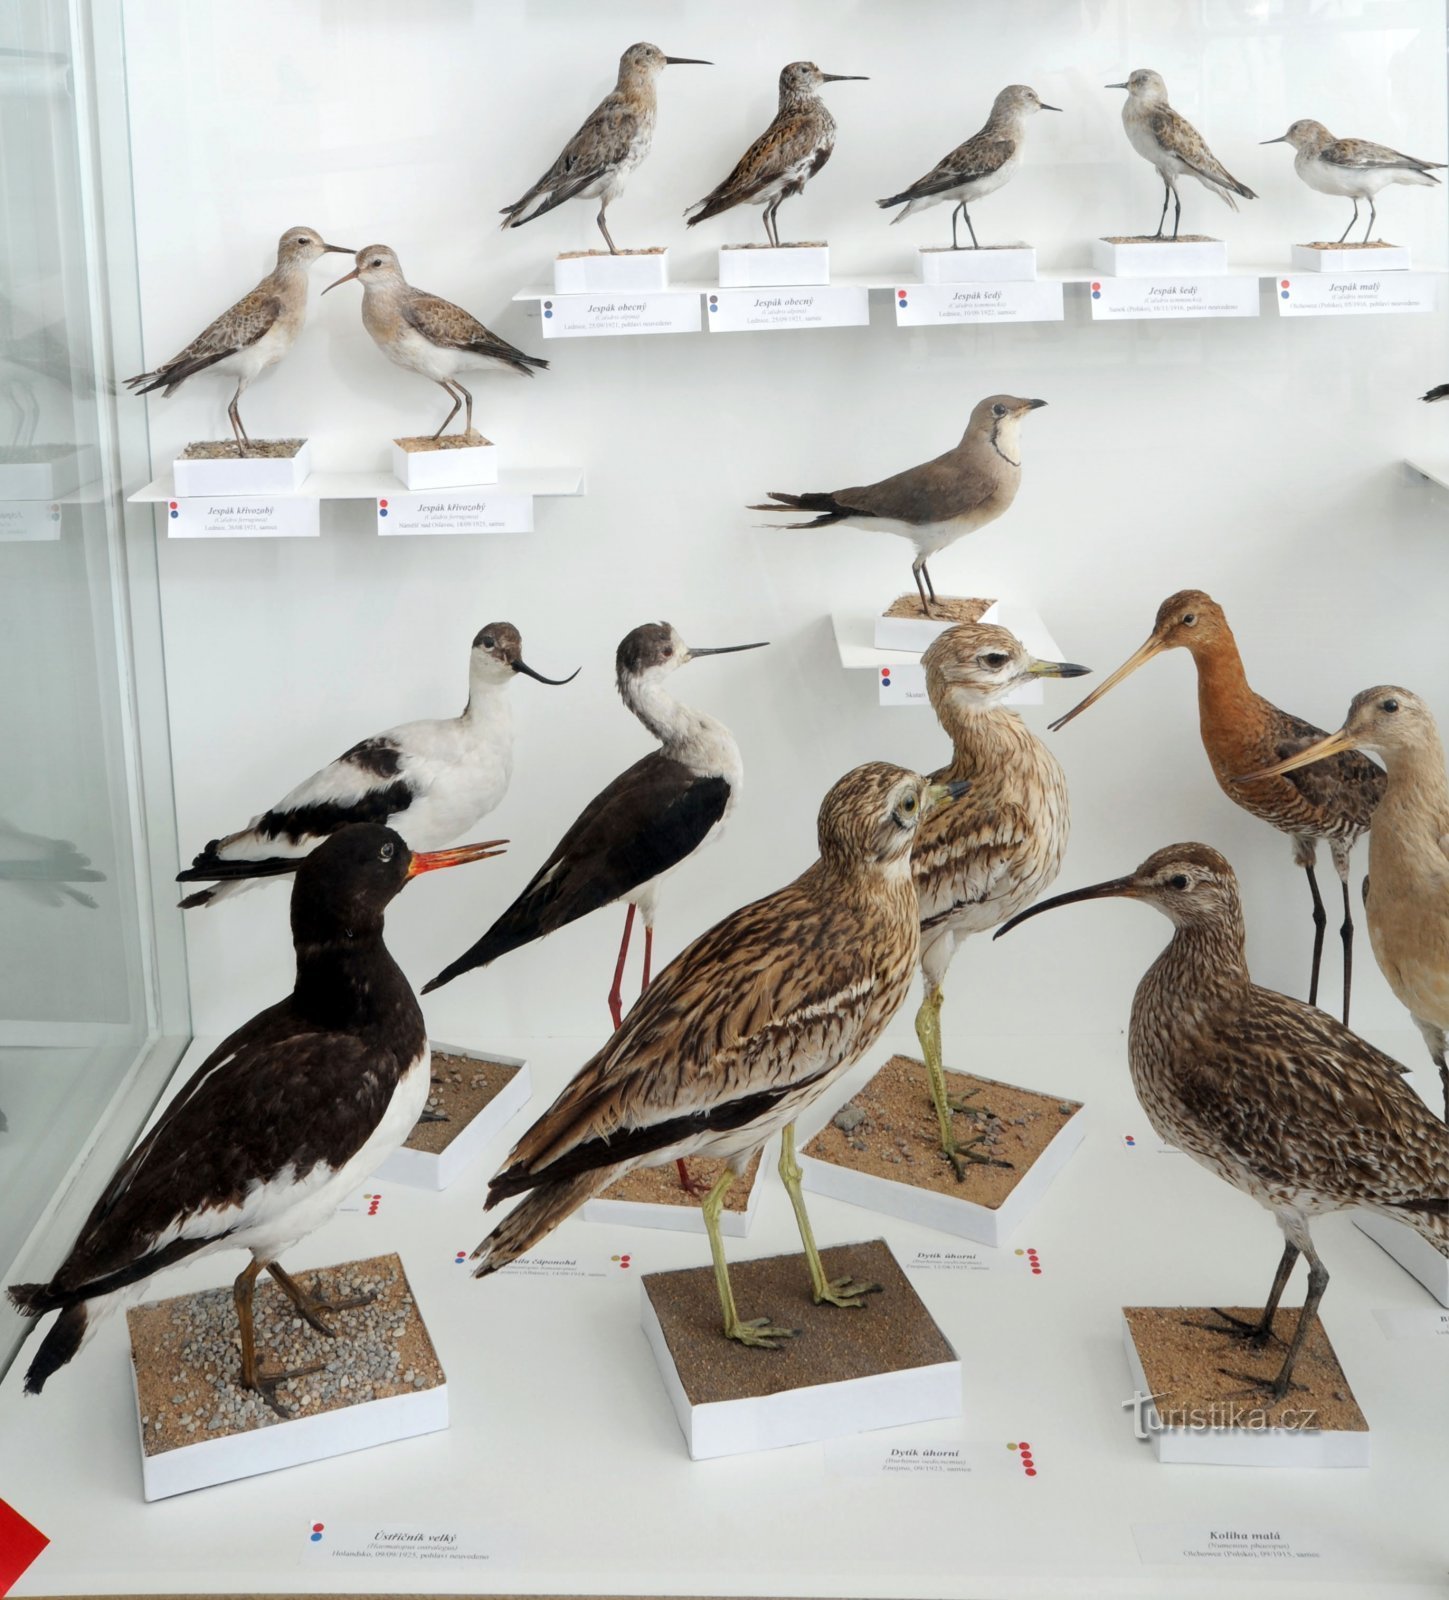 Ornitologická sbírka obsahující zástupce 255 ptačích druhů